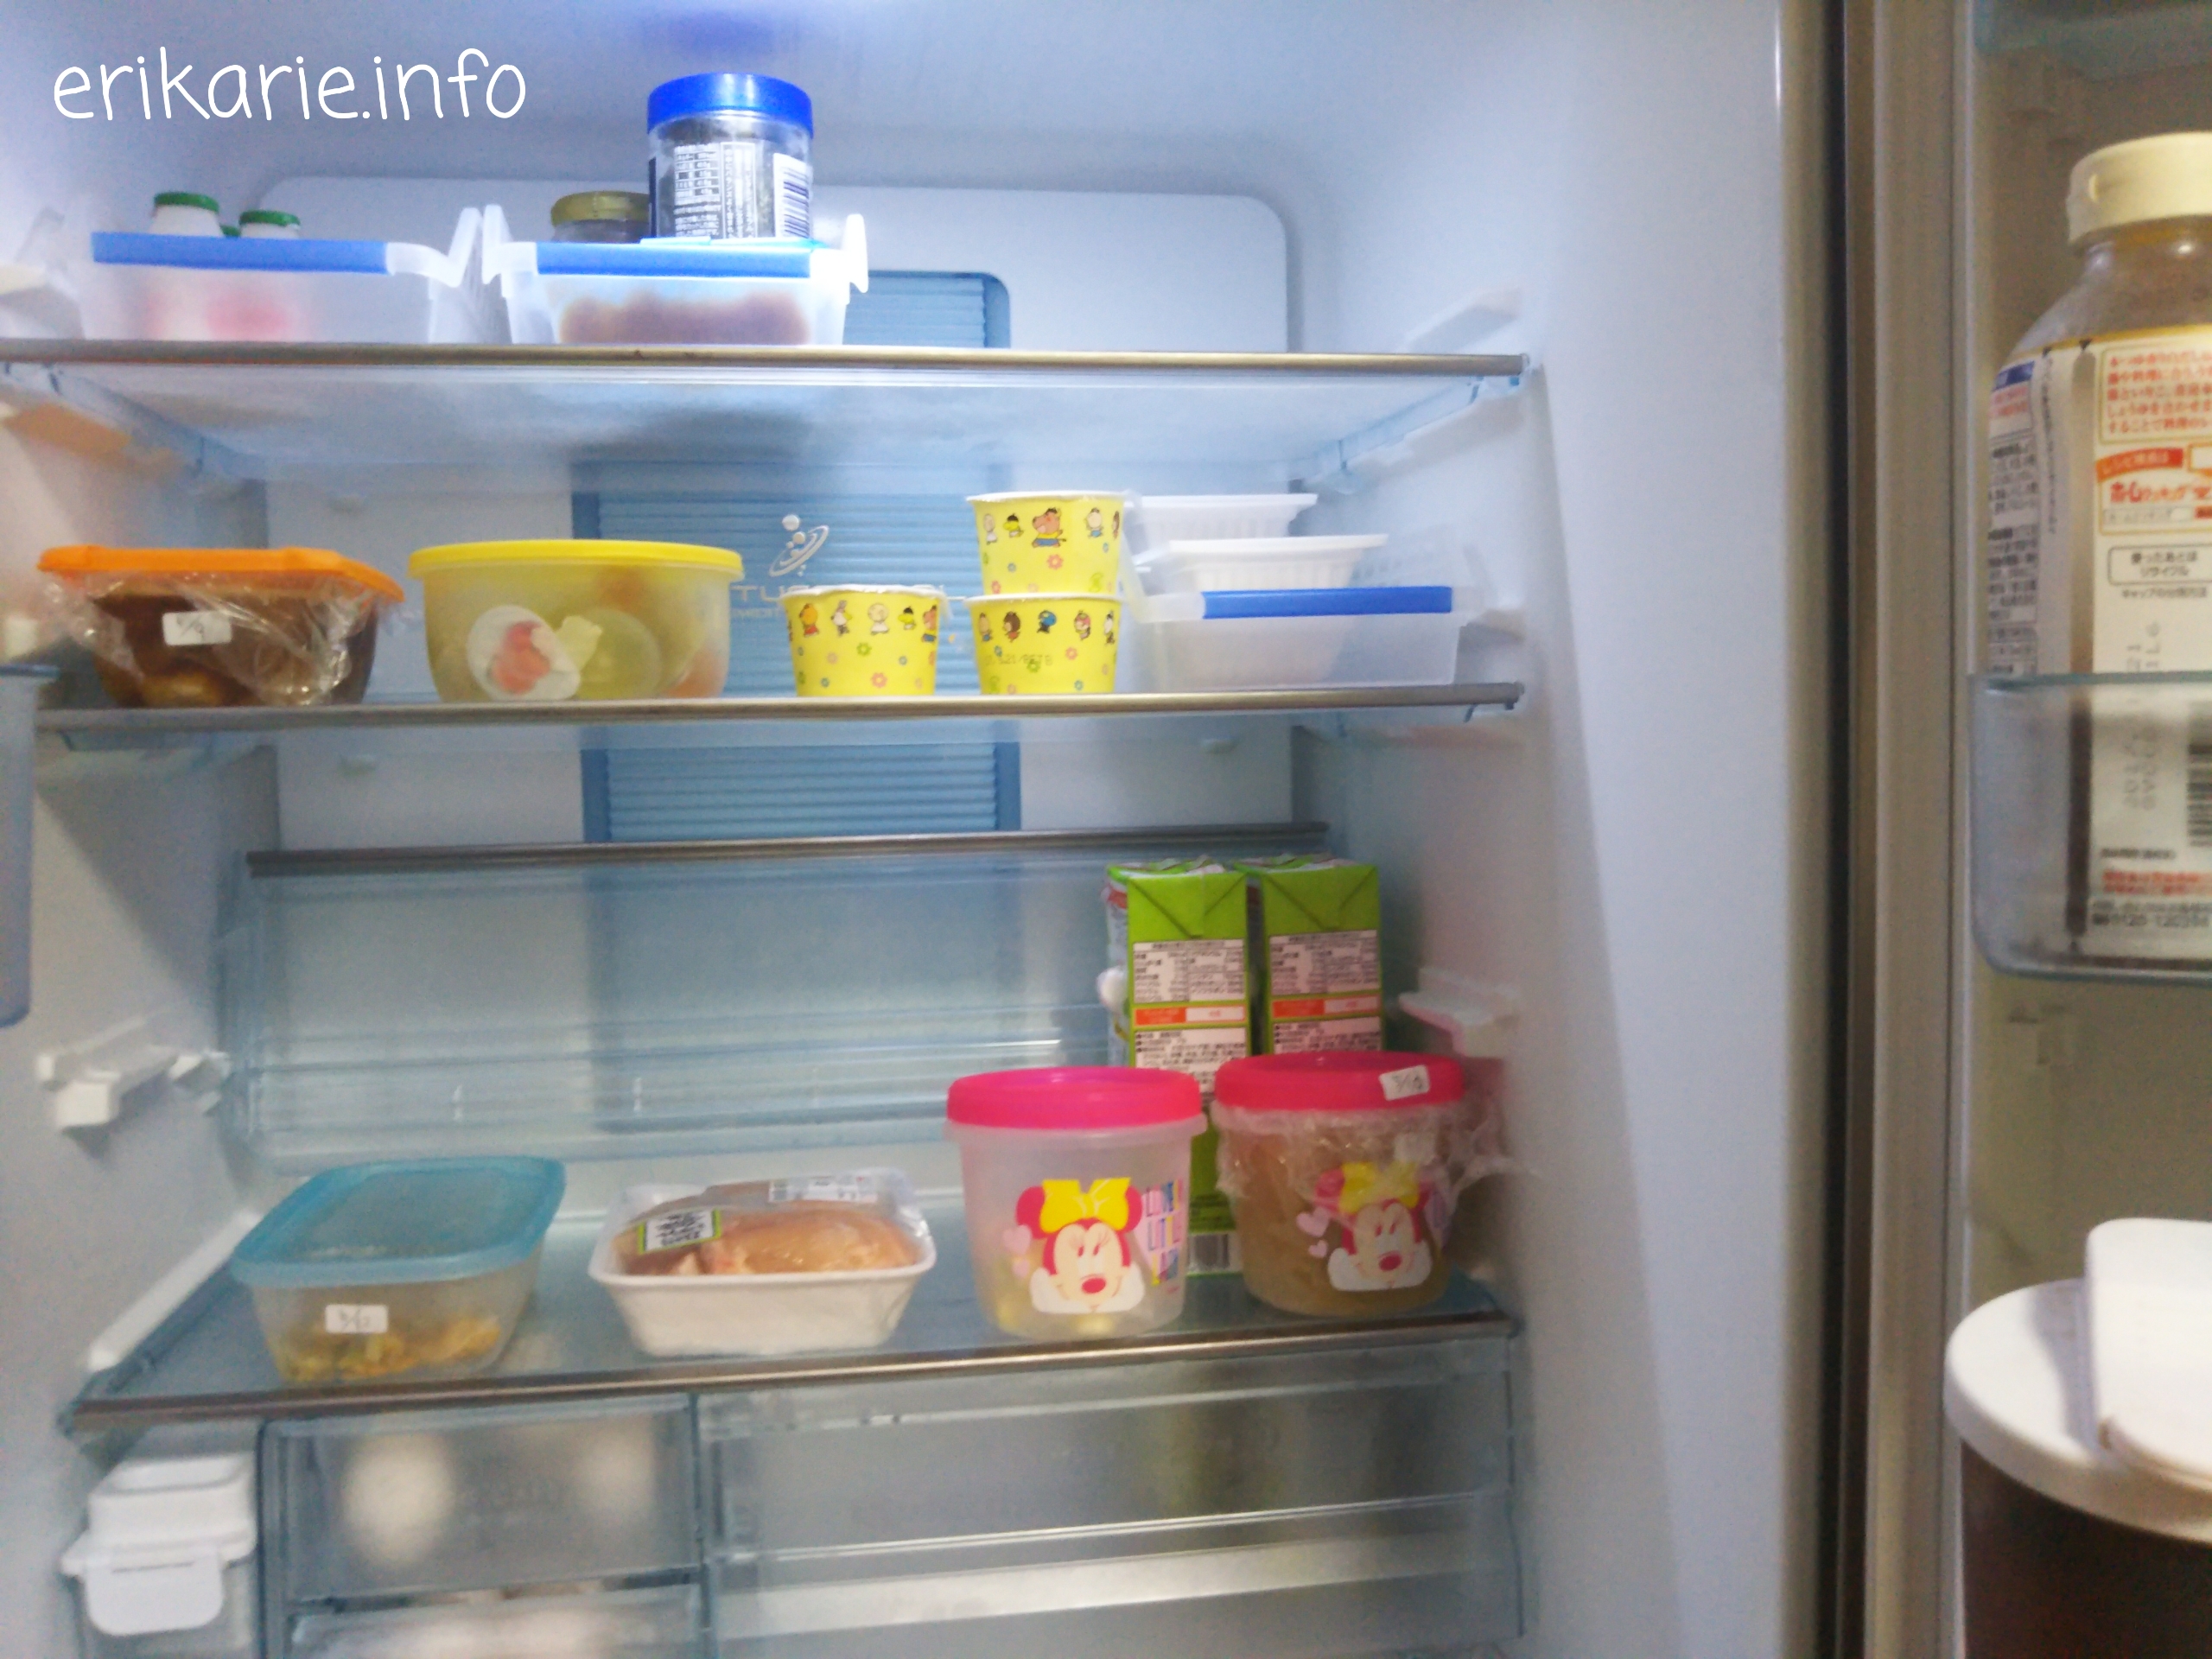 冷蔵庫を整理して、食品の無駄をなくす為に私がしている一工夫